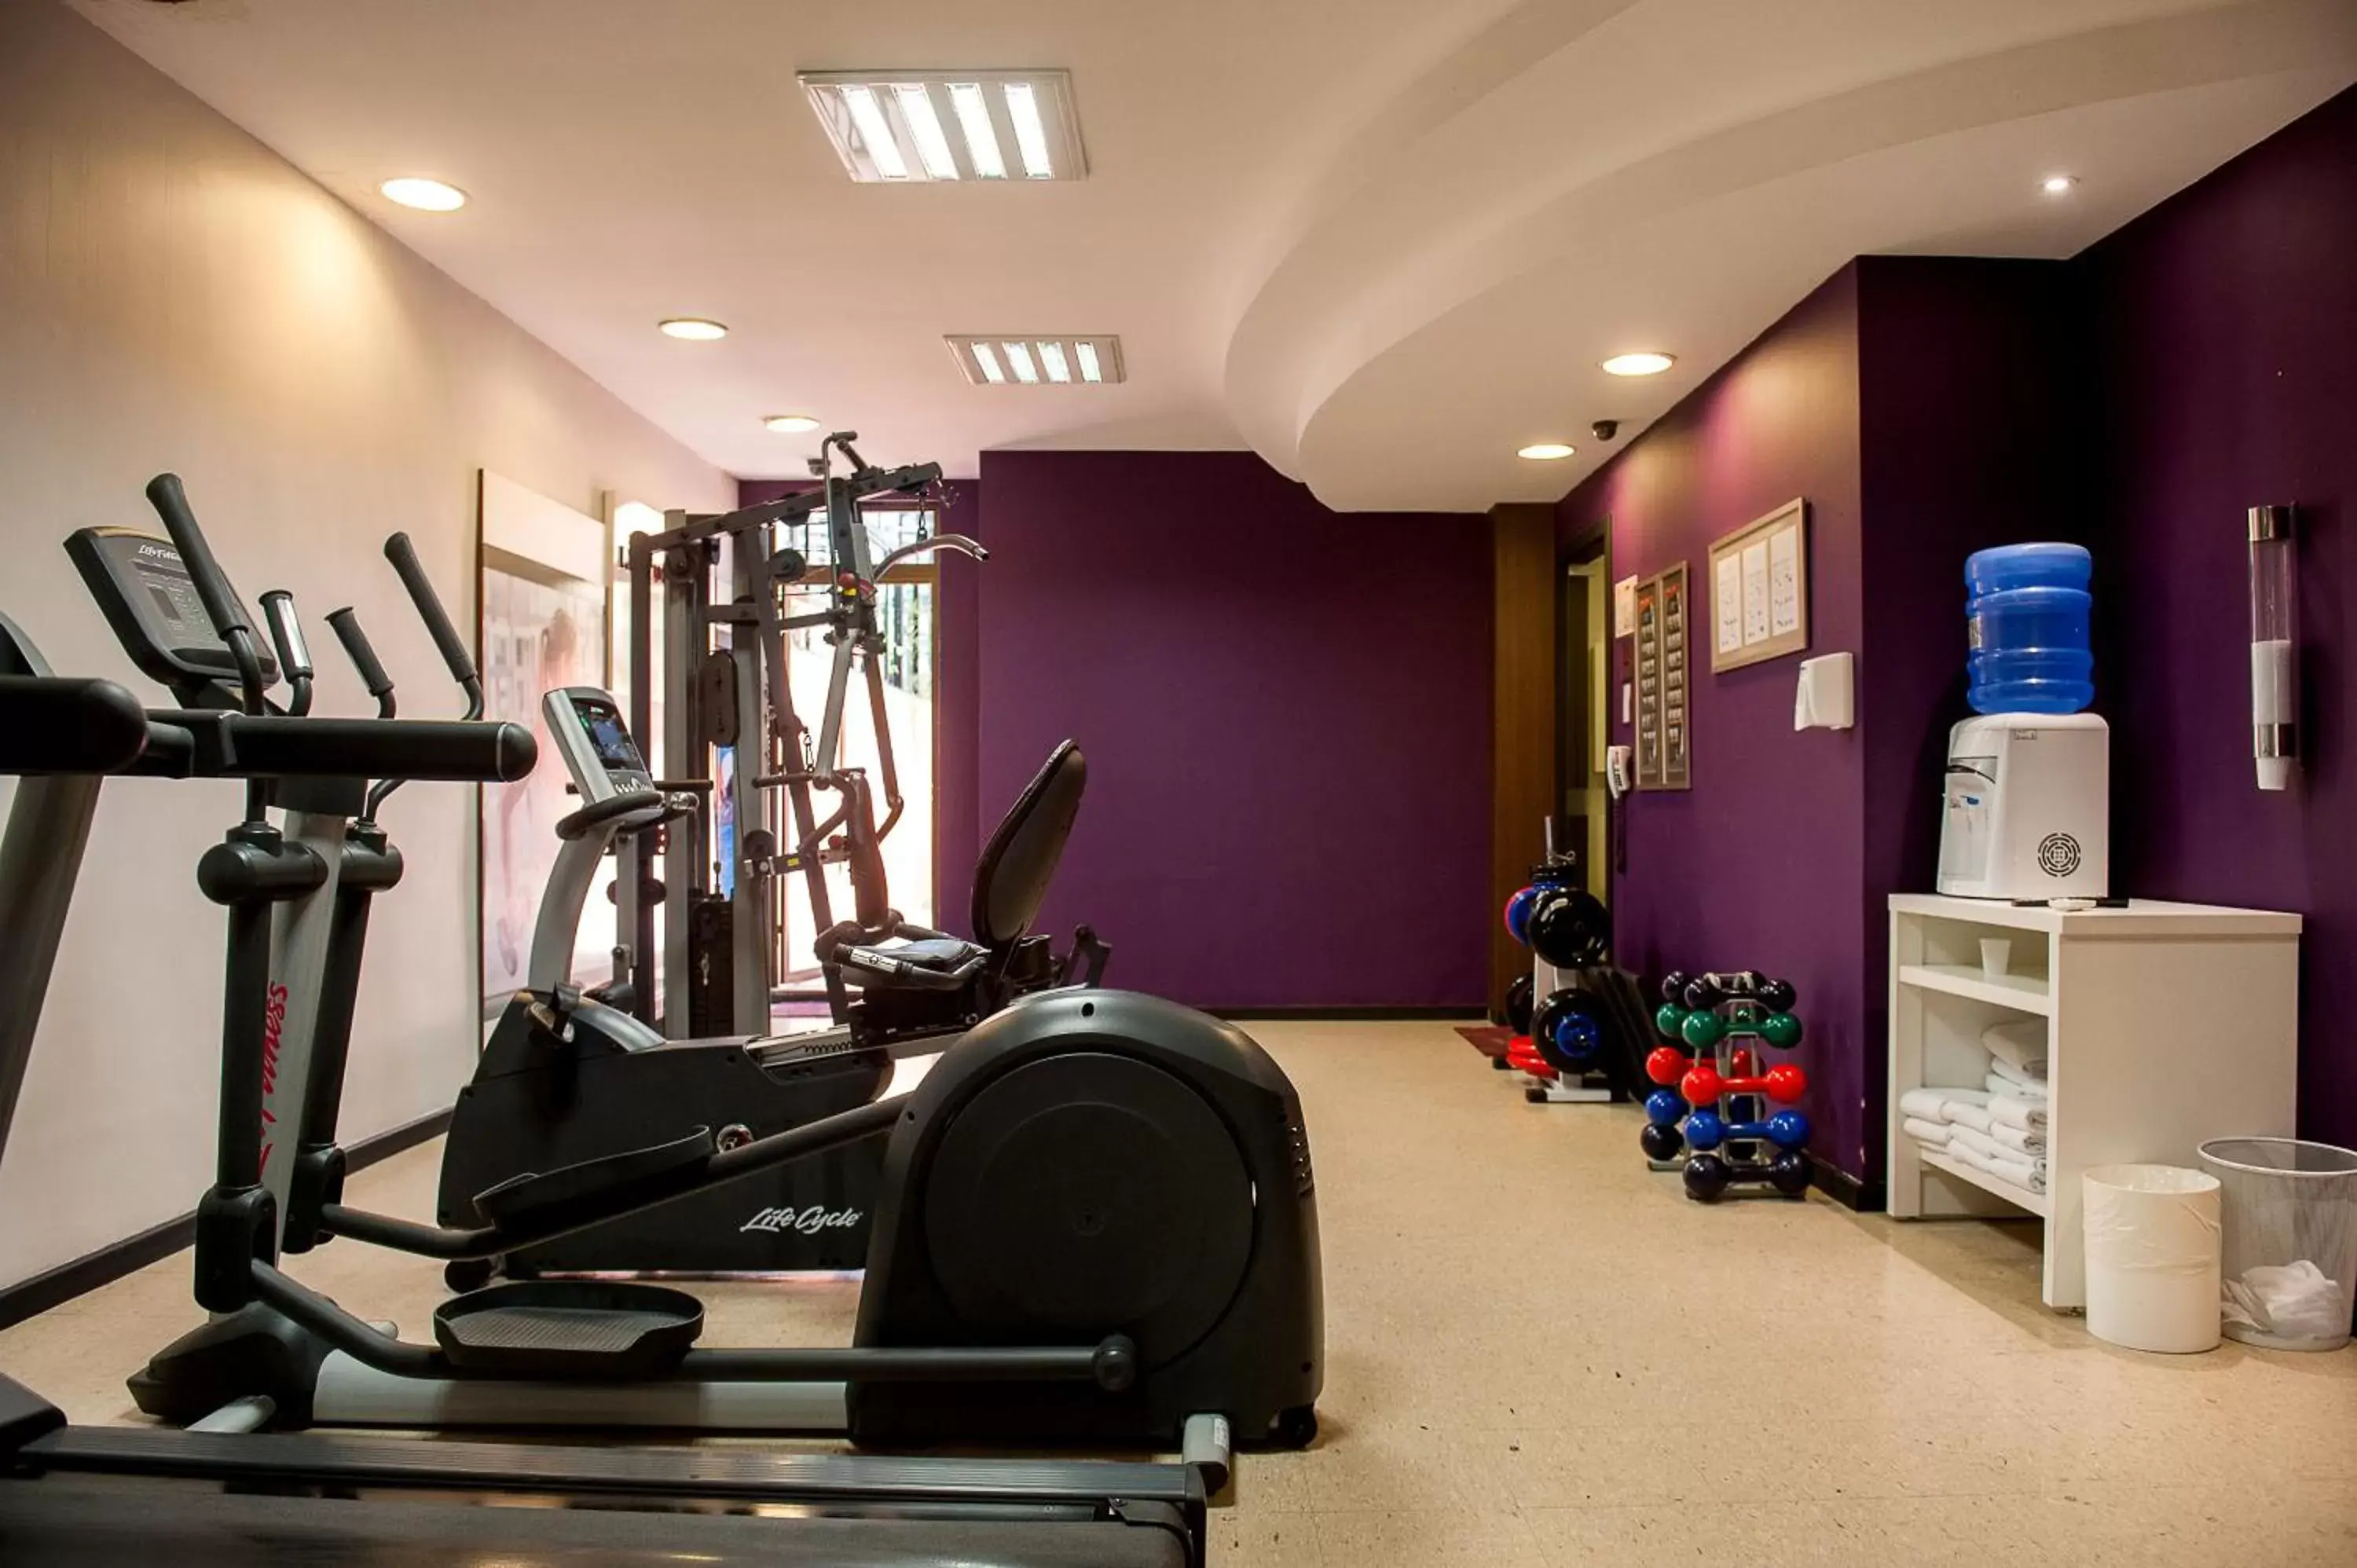 Fitness centre/facilities, Fitness Center/Facilities in Manhattan Porto Alegre by Mercure